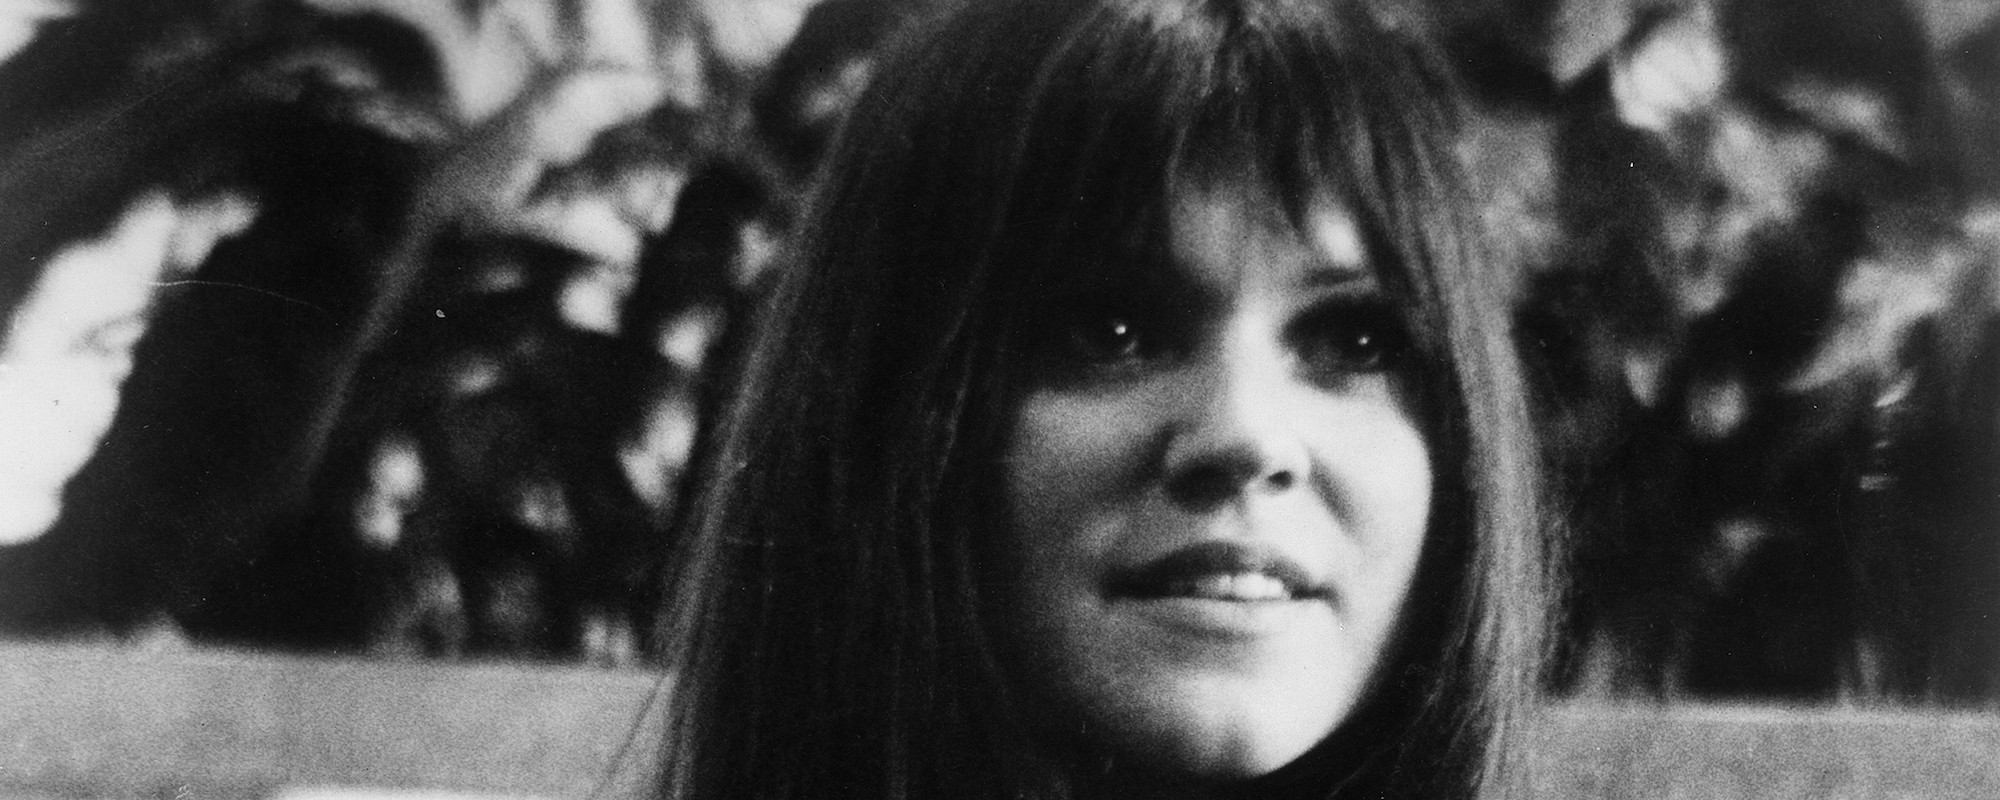 Melanie Safka, Woodstock Performer, Singer and Songwriter of 1970s Hit “Brand New Key” Dies at 76